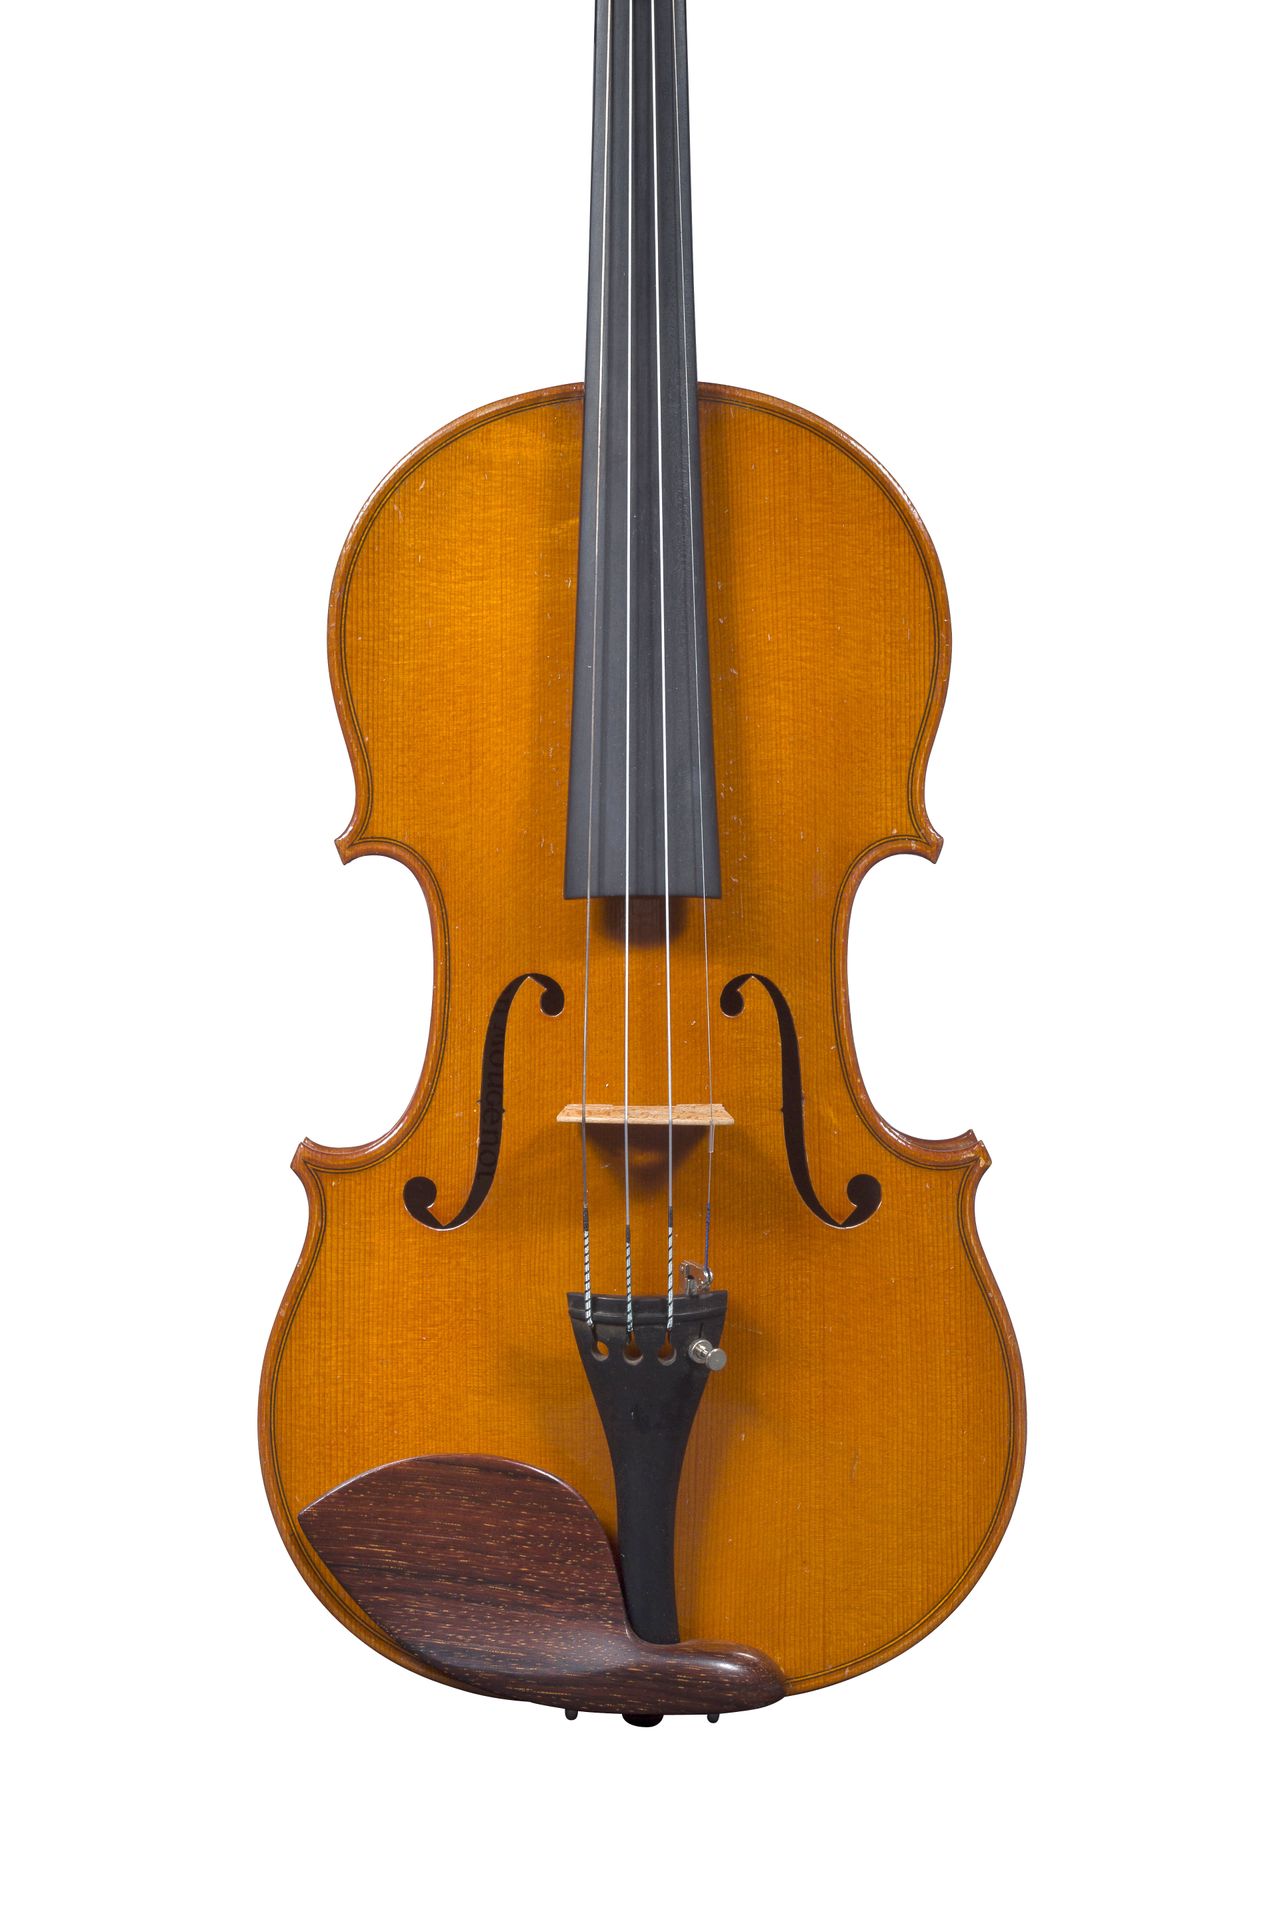 Violon de Léon Mougenot Jacquet Gand Fabricado en Mirecourt en 1925, número 479
&hellip;